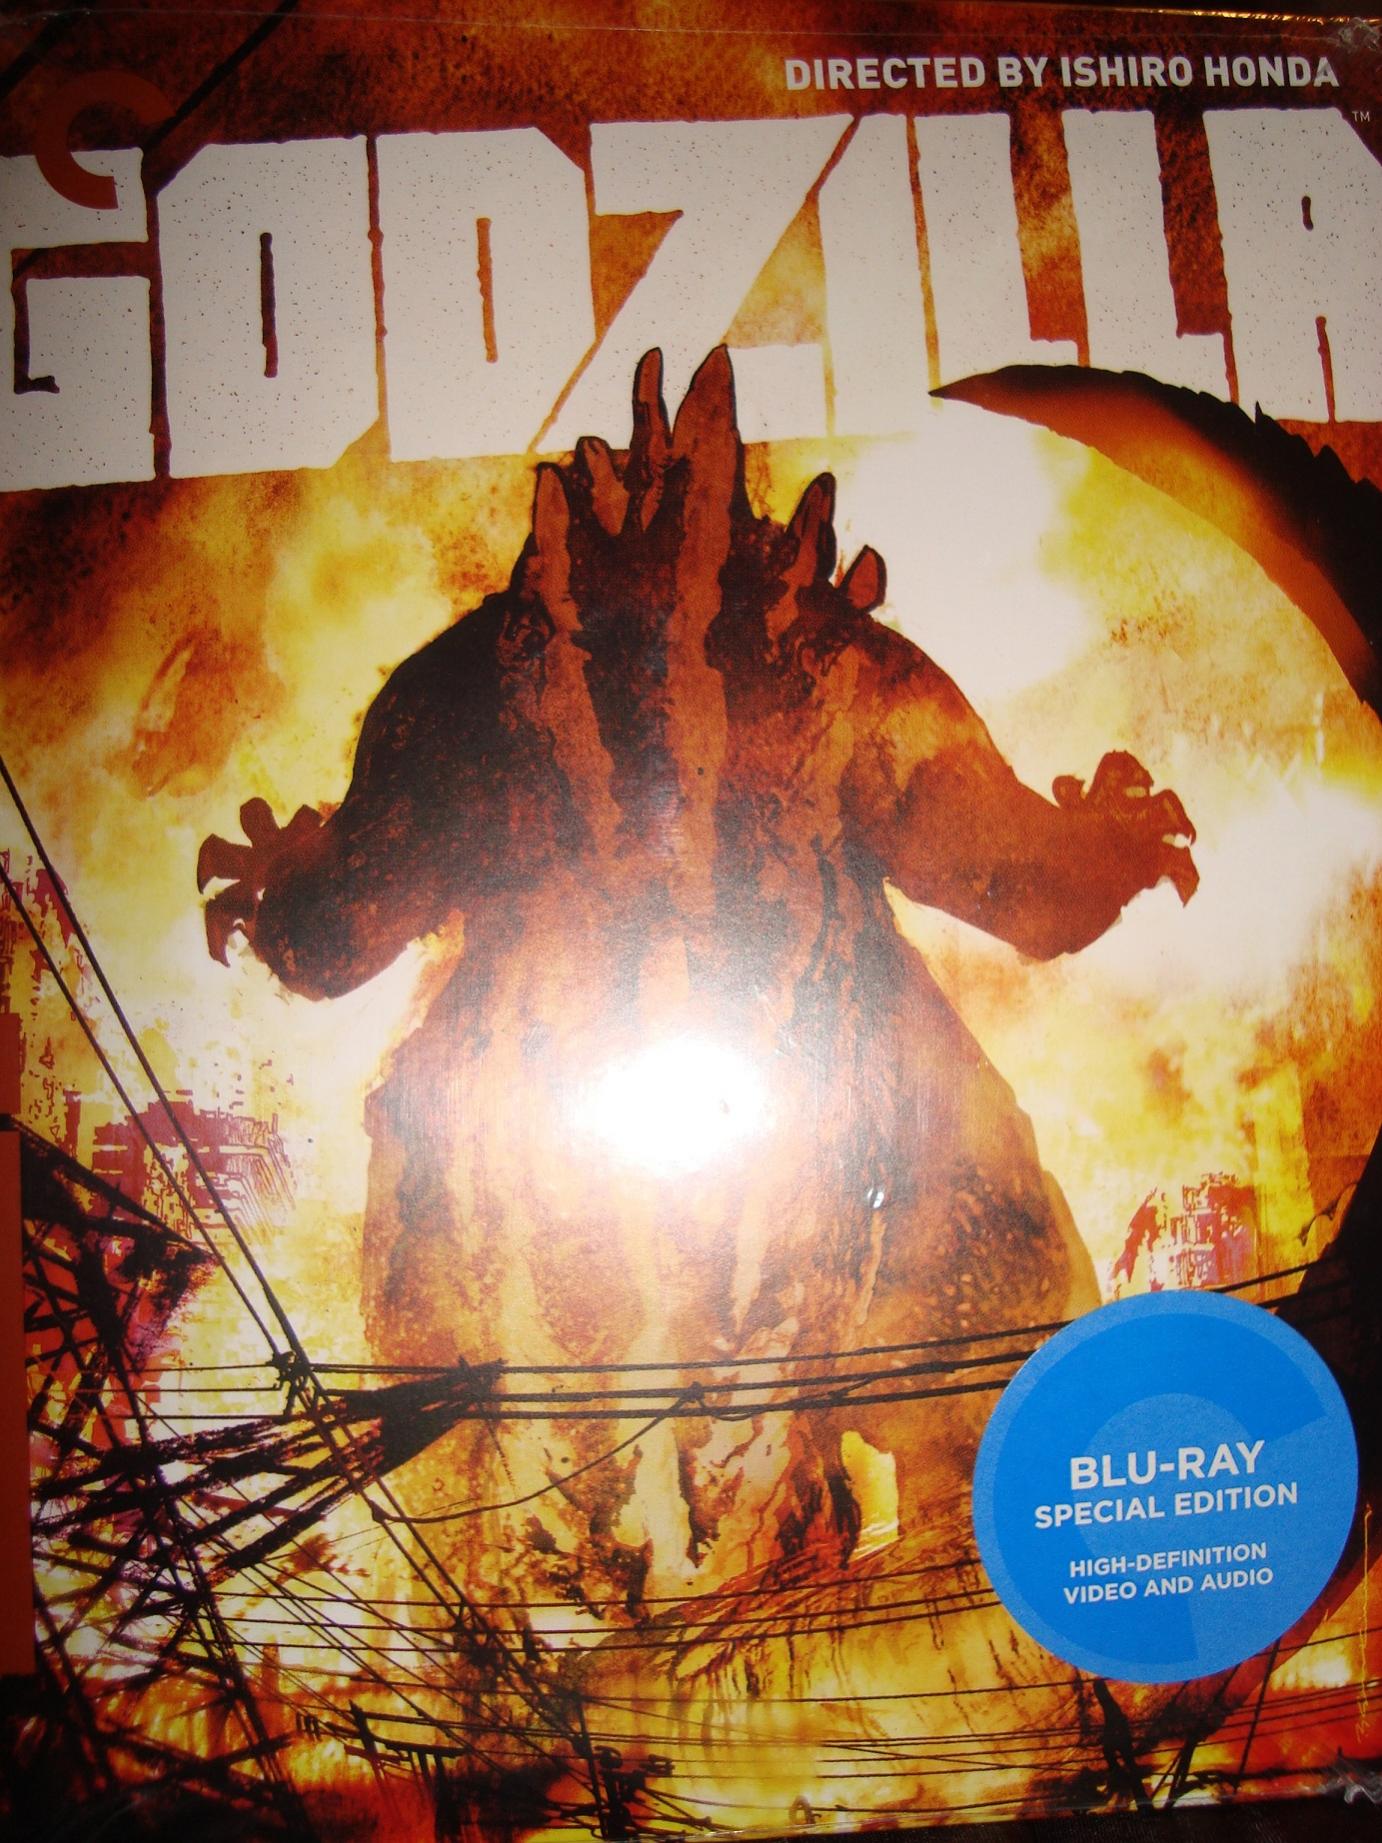 1. Godzilla 1954 Blu Ray